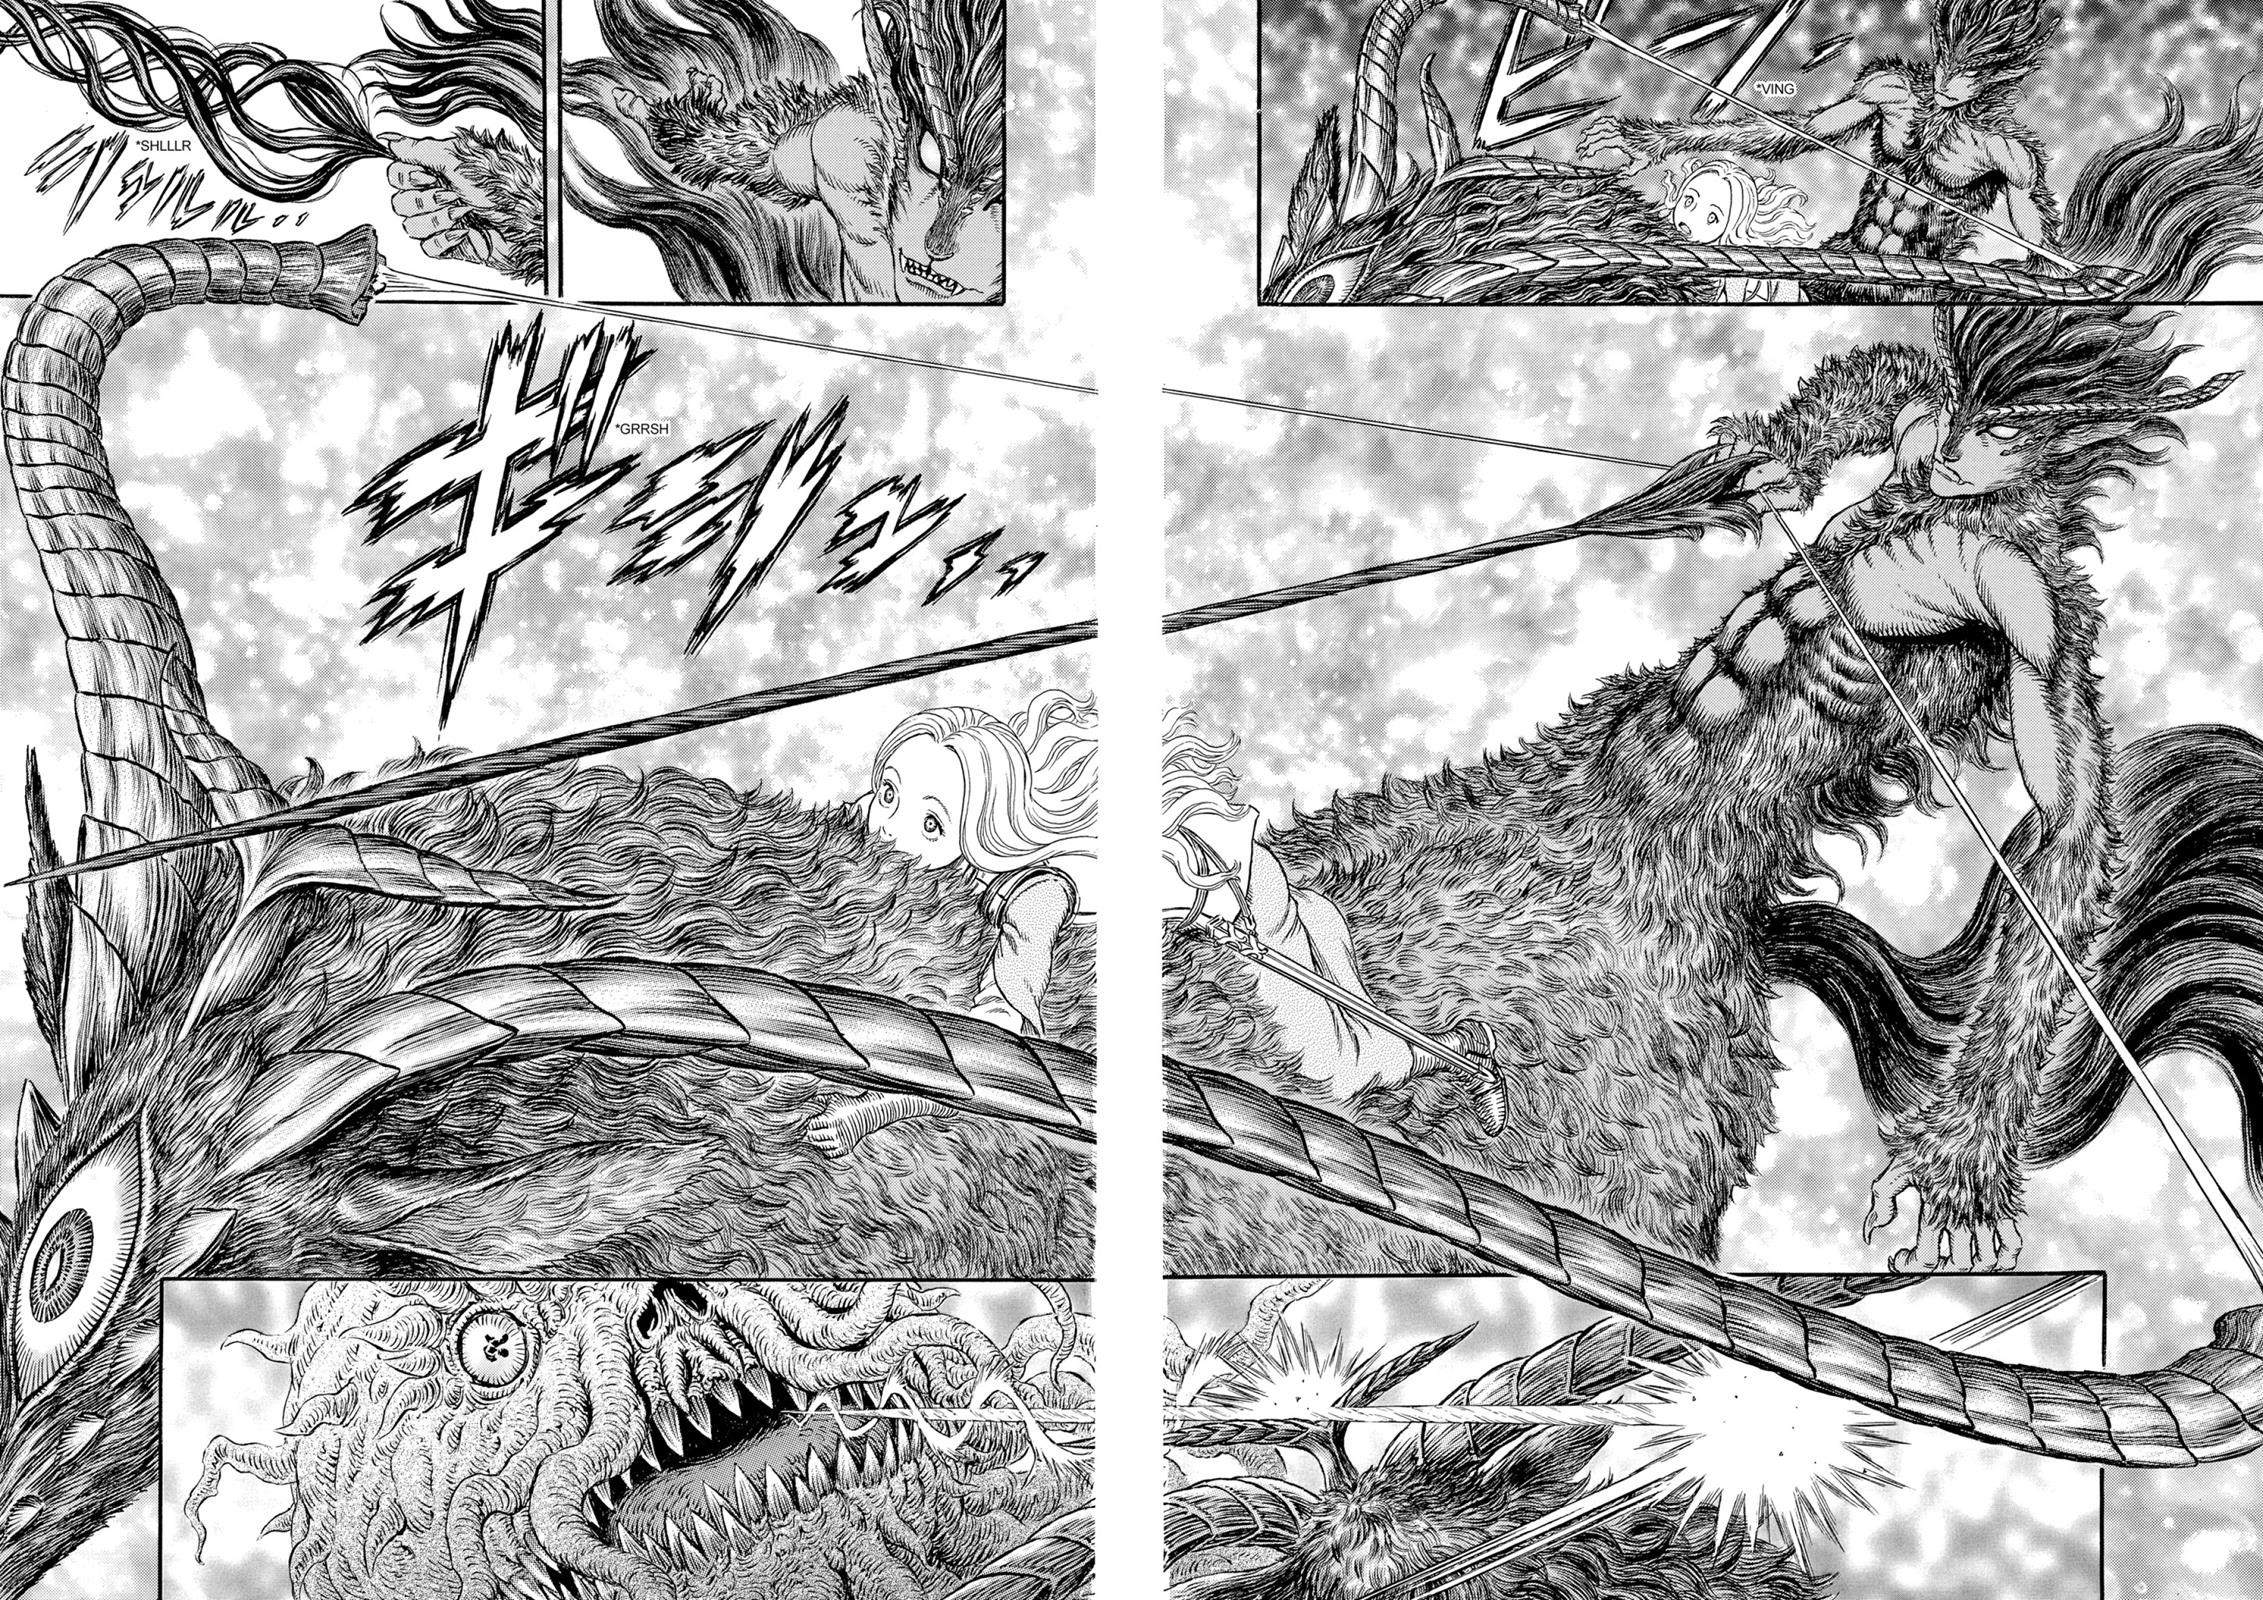 Berserk Manga Chapter 301 image 05